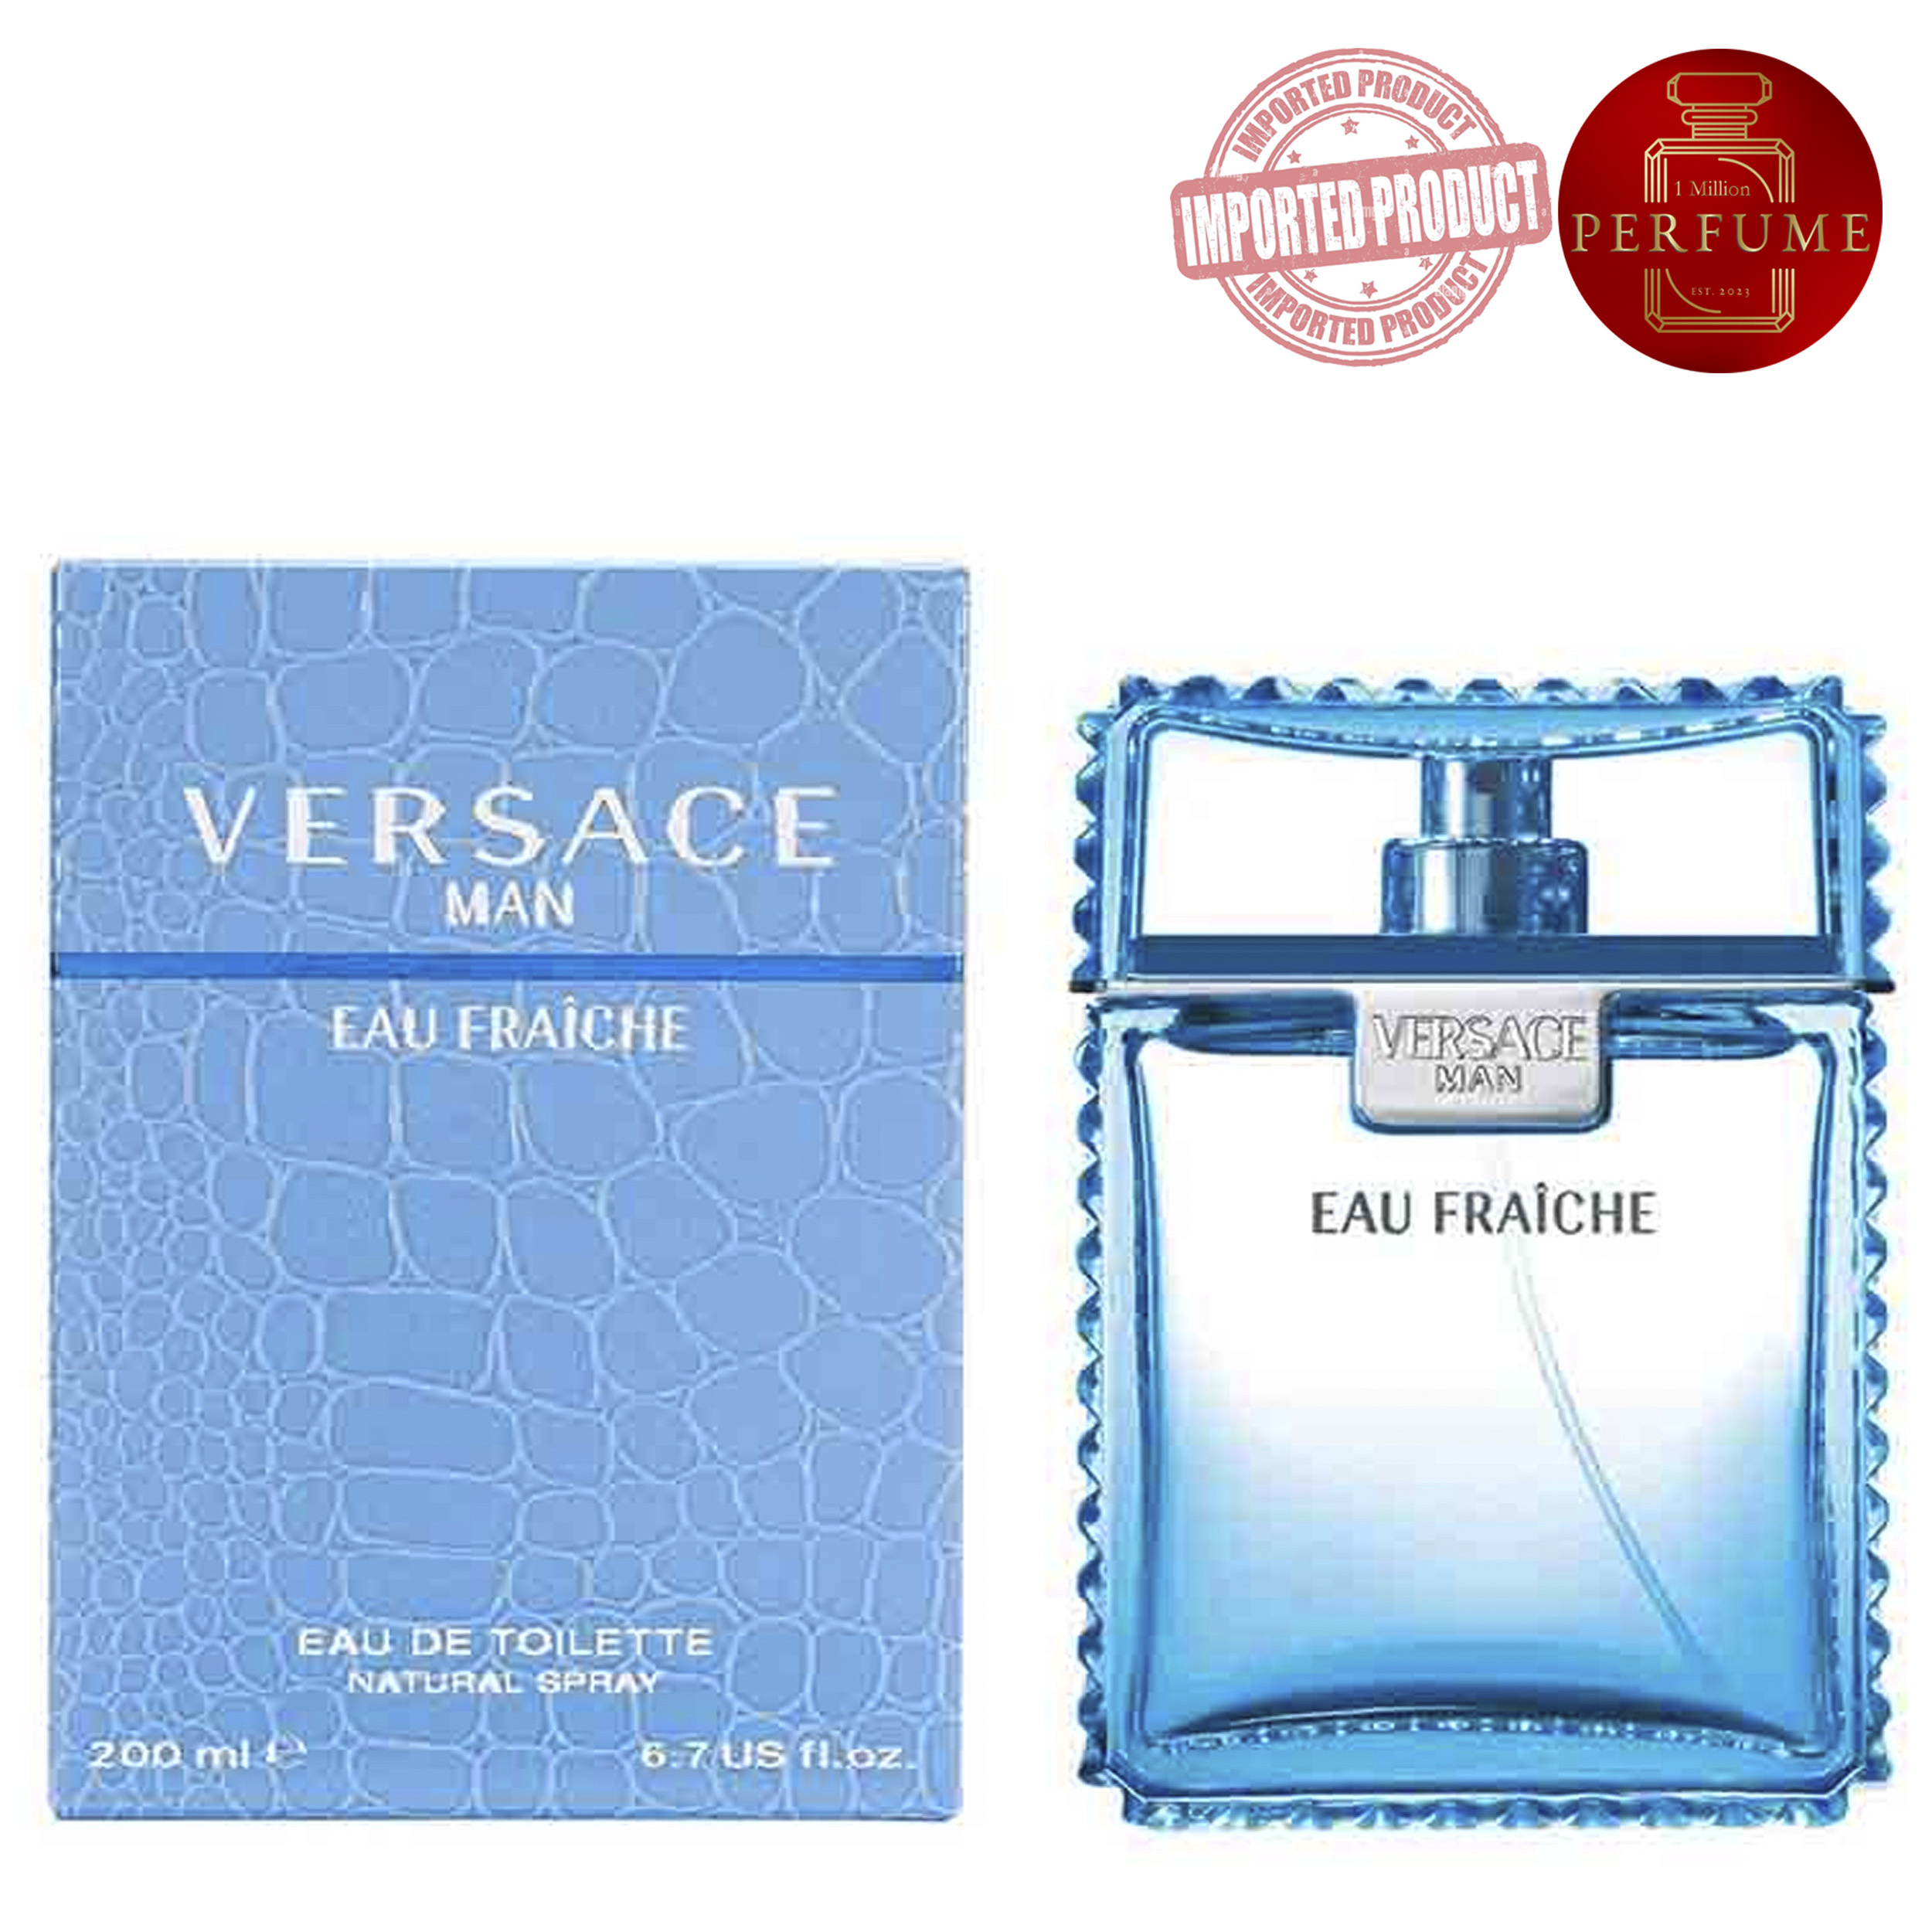 Versace Man Eau Fraiche   (Perfume Replica Con Fragancia Importada)- Hombre